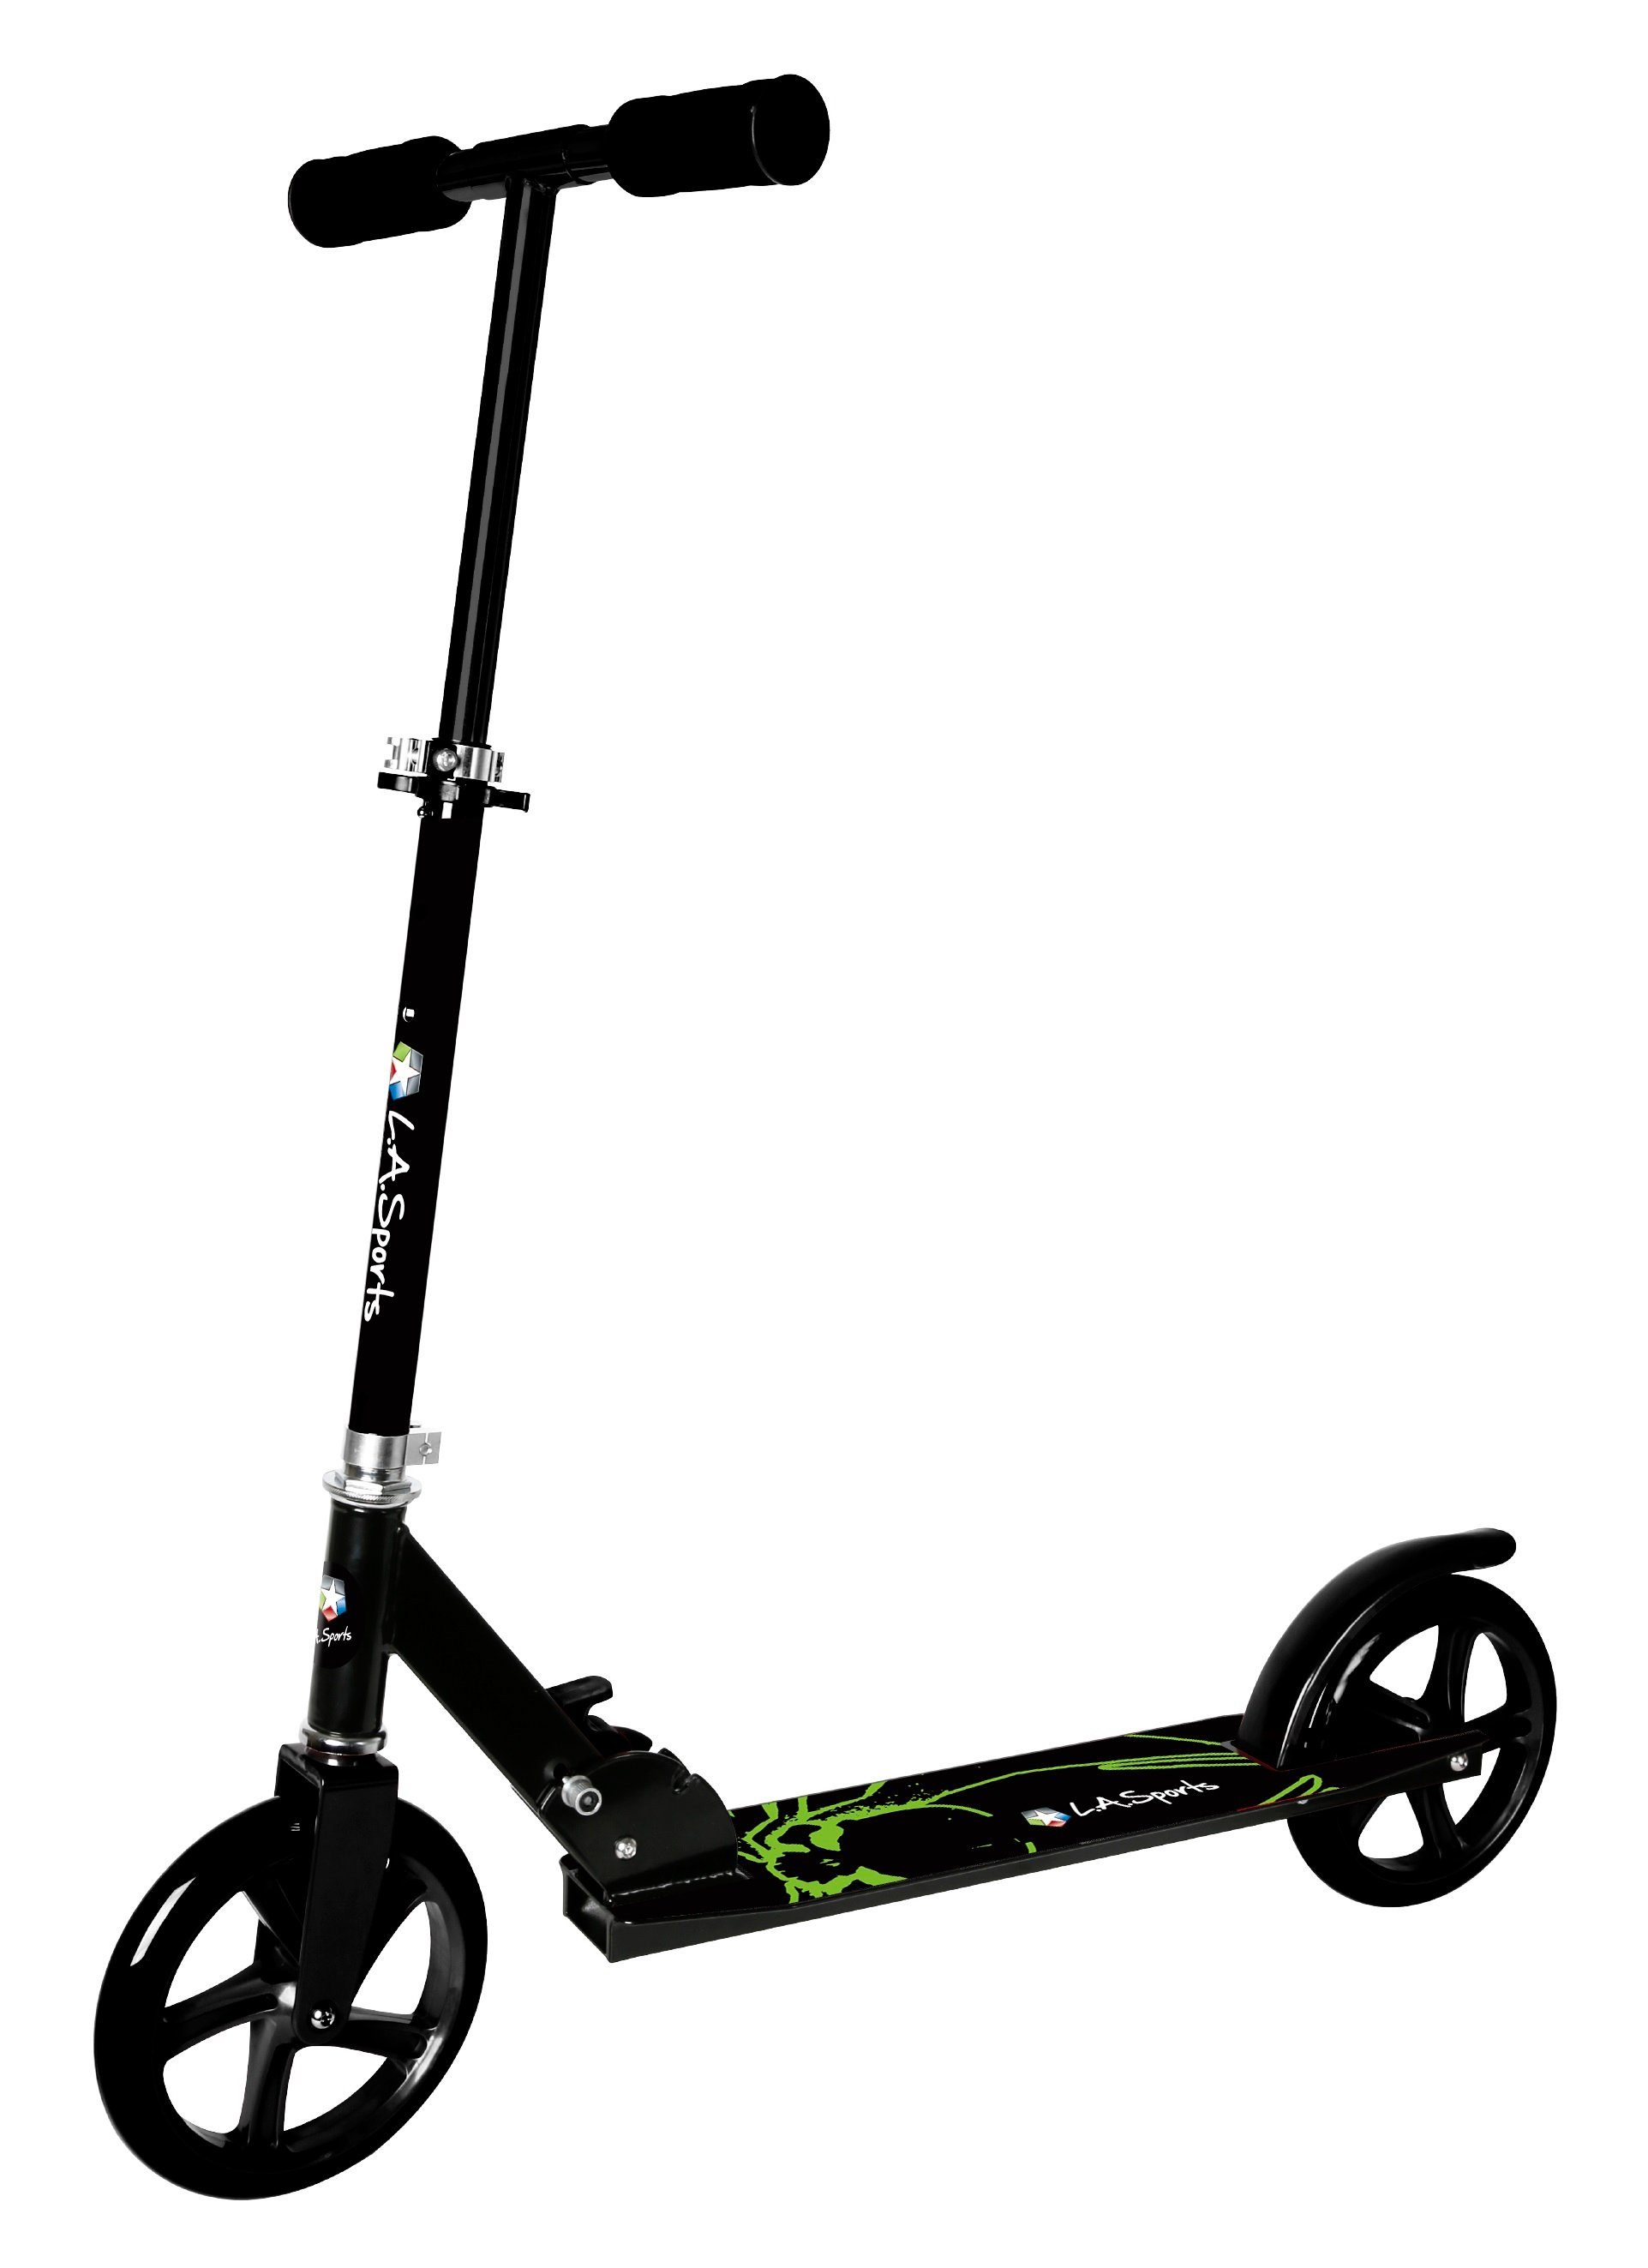 L.A. Sports Cityroller ALU-Scooter Onyx XL Big Wheels ab 6 Jahren,  City-Roller Farbe grün - schwarz, faltbar, Höhe verstellbar für Kinder,  Jugendliche & Erwachsene, große XL Räder 200 mm